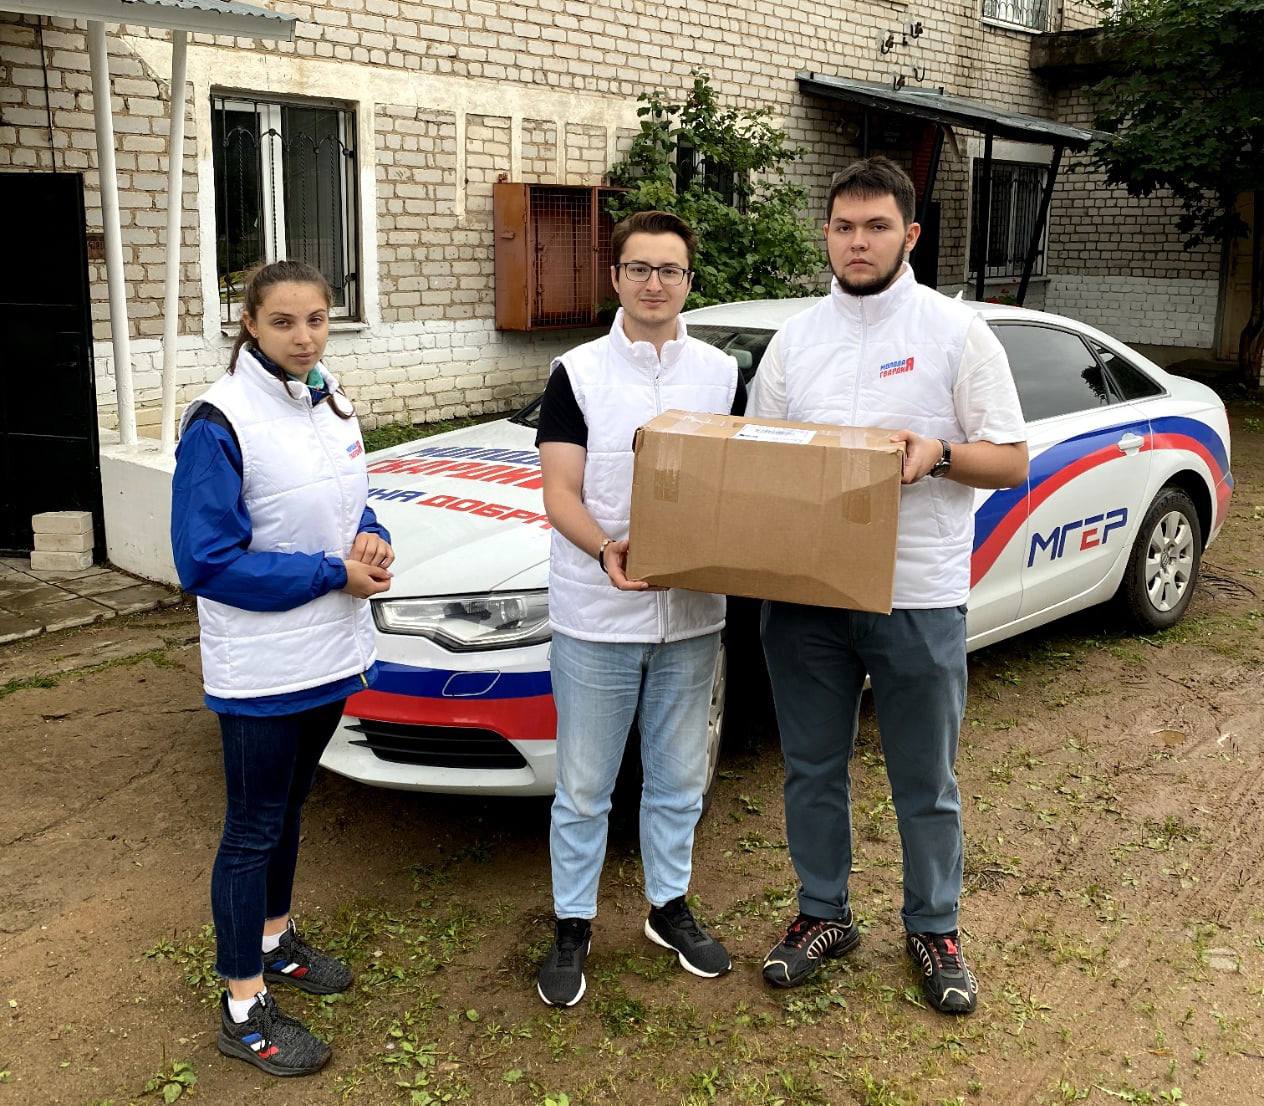 Молодогвардейцы Тверской области оказывают гуманитарную помощь жителям Андреапольского района, пострадавшим из-за урагана